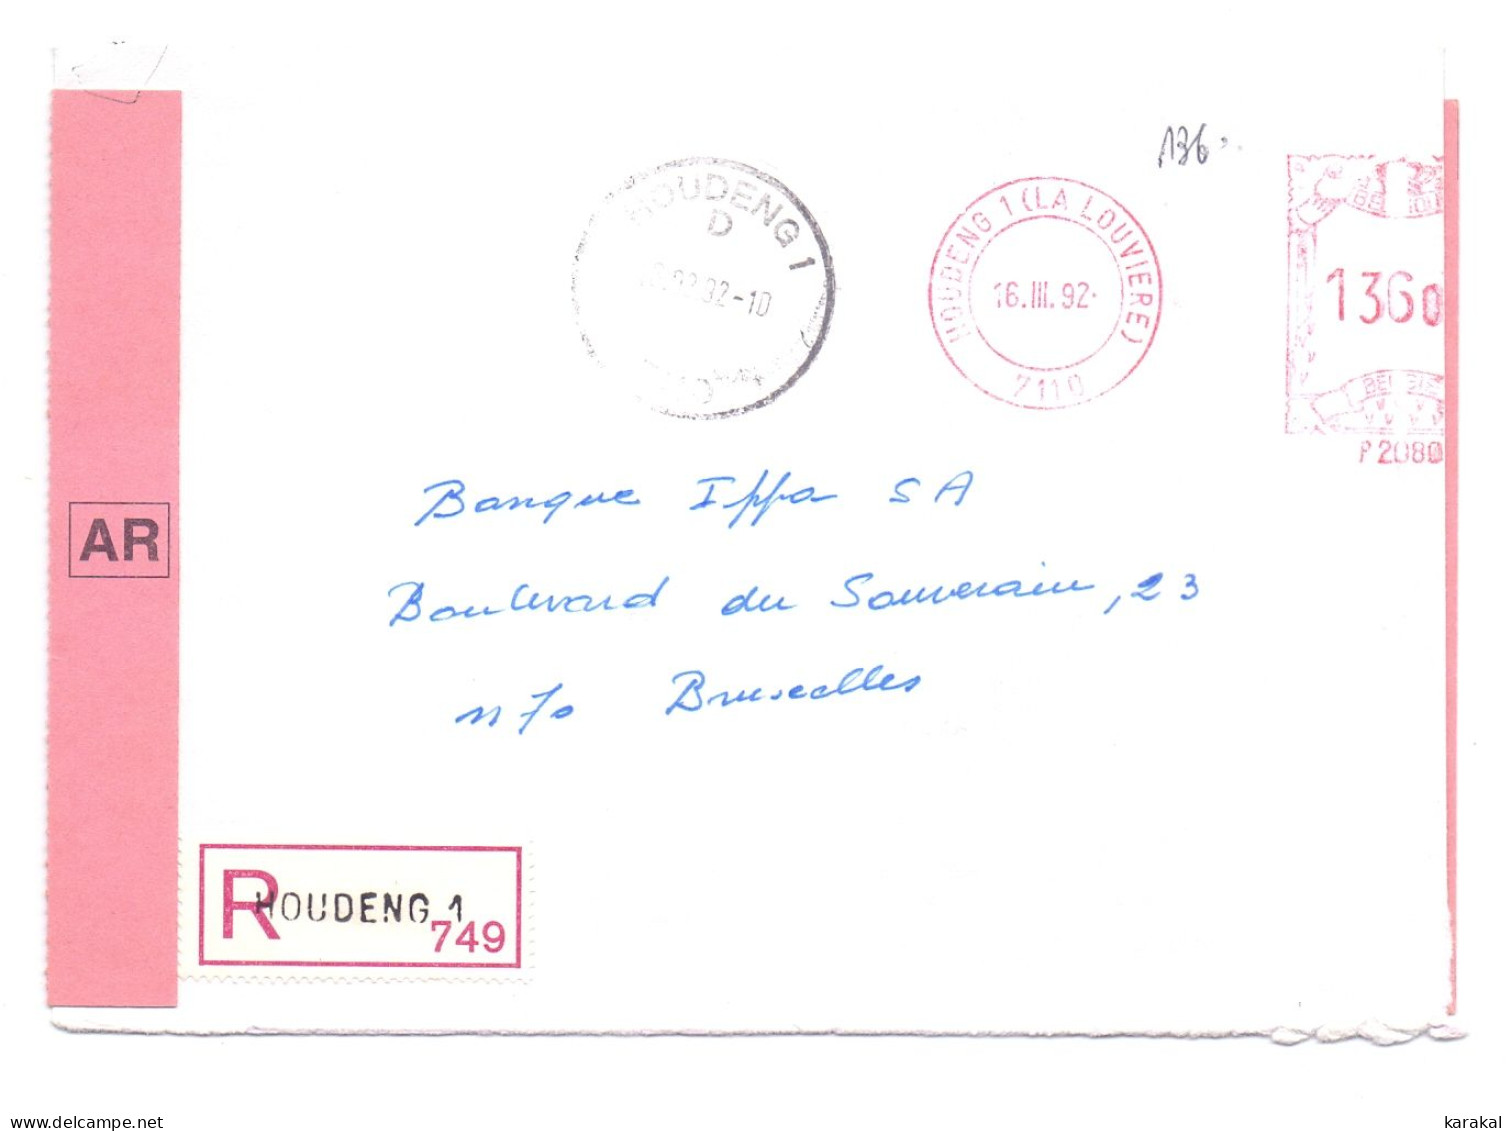 Belgique EMA P2080 IPPA Lettre Recommandée Avec Accusé De Réception AR Houdeng 1 Bruxelles 1992 - 1980-1999